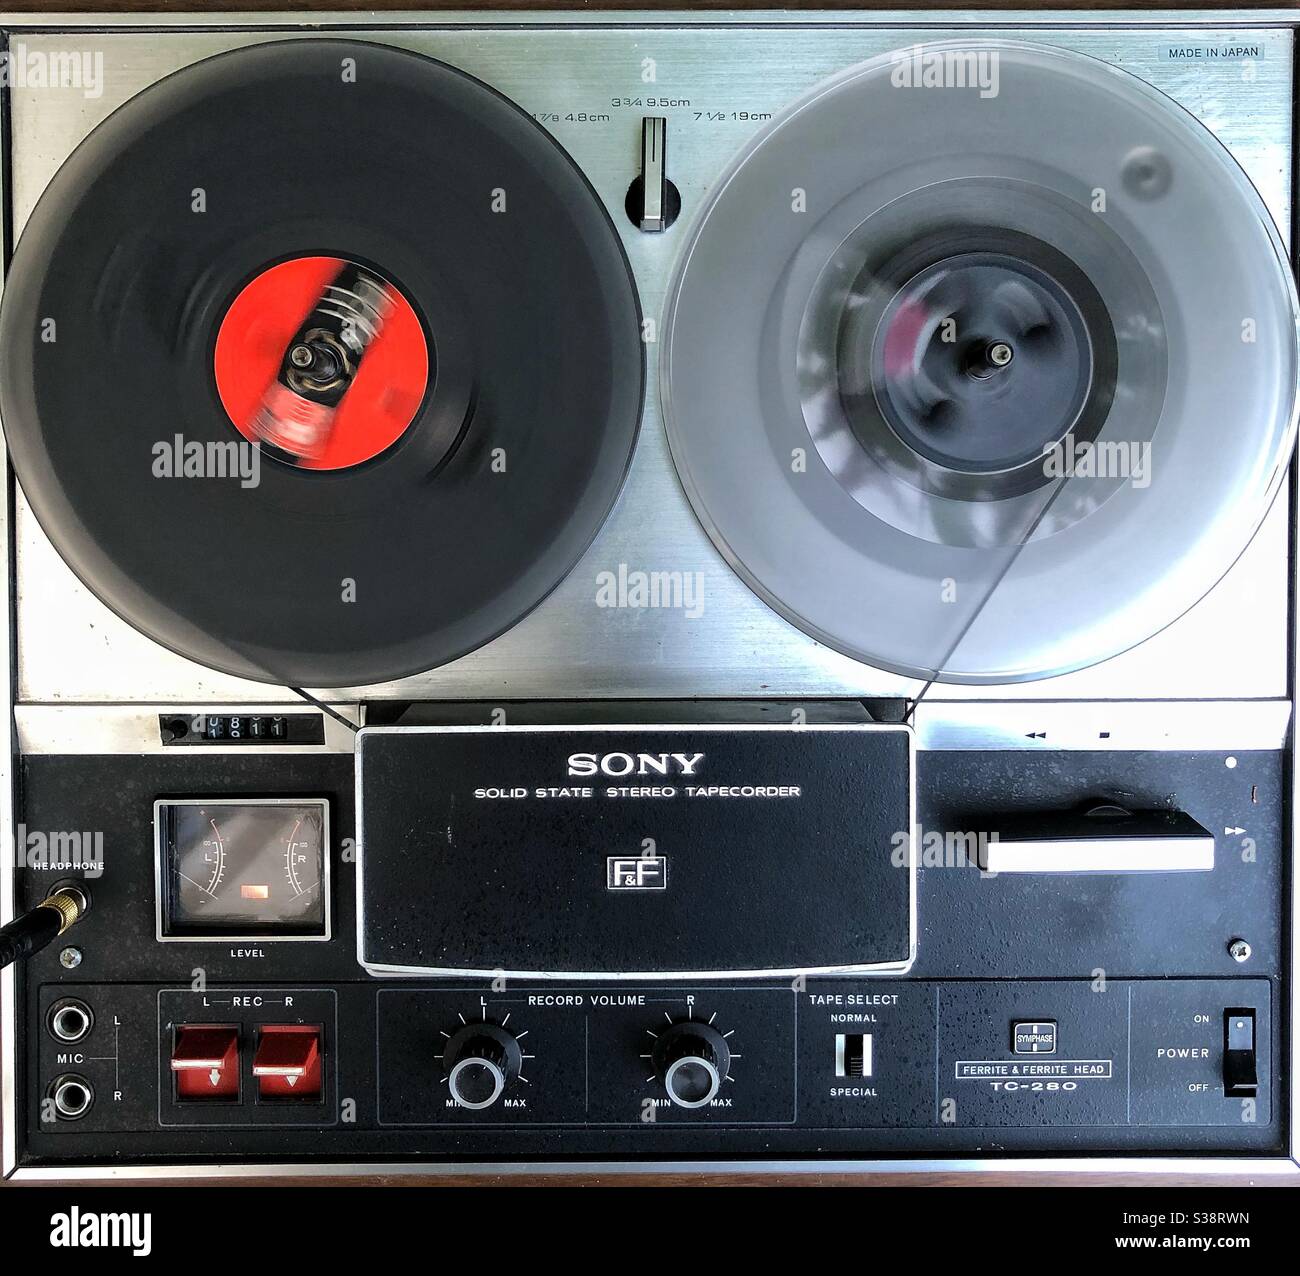 Sony reel to reel tape machine Stock Photo - Alamy